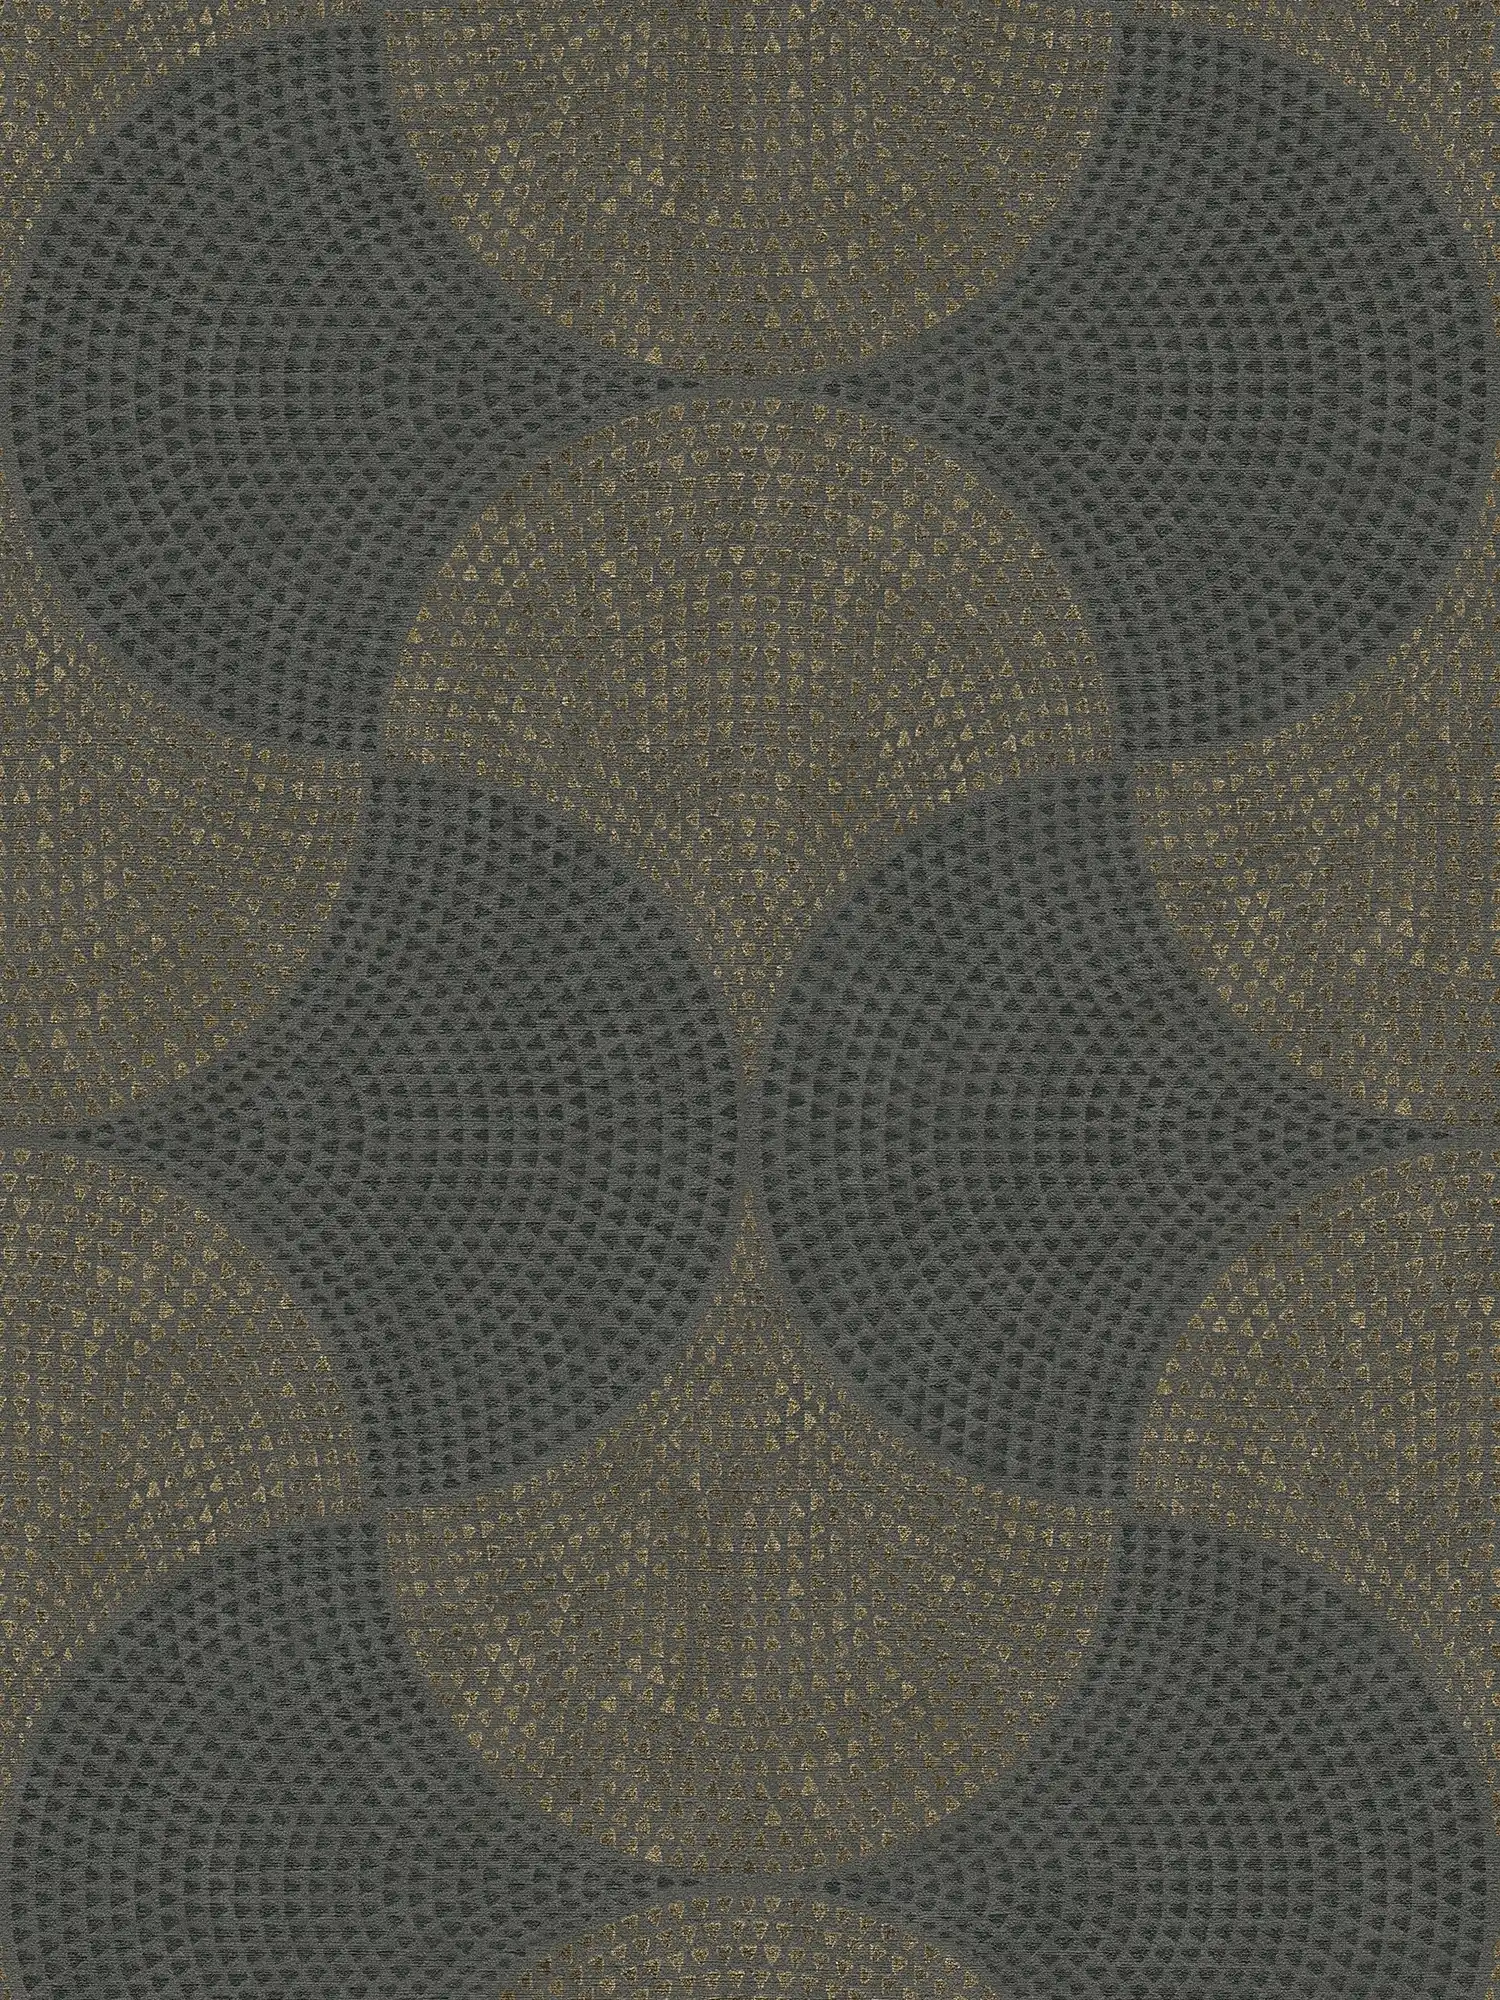 Tapete Mosaik-Muster mit Metallic Effekt & Used Look – Grau, Metallic
